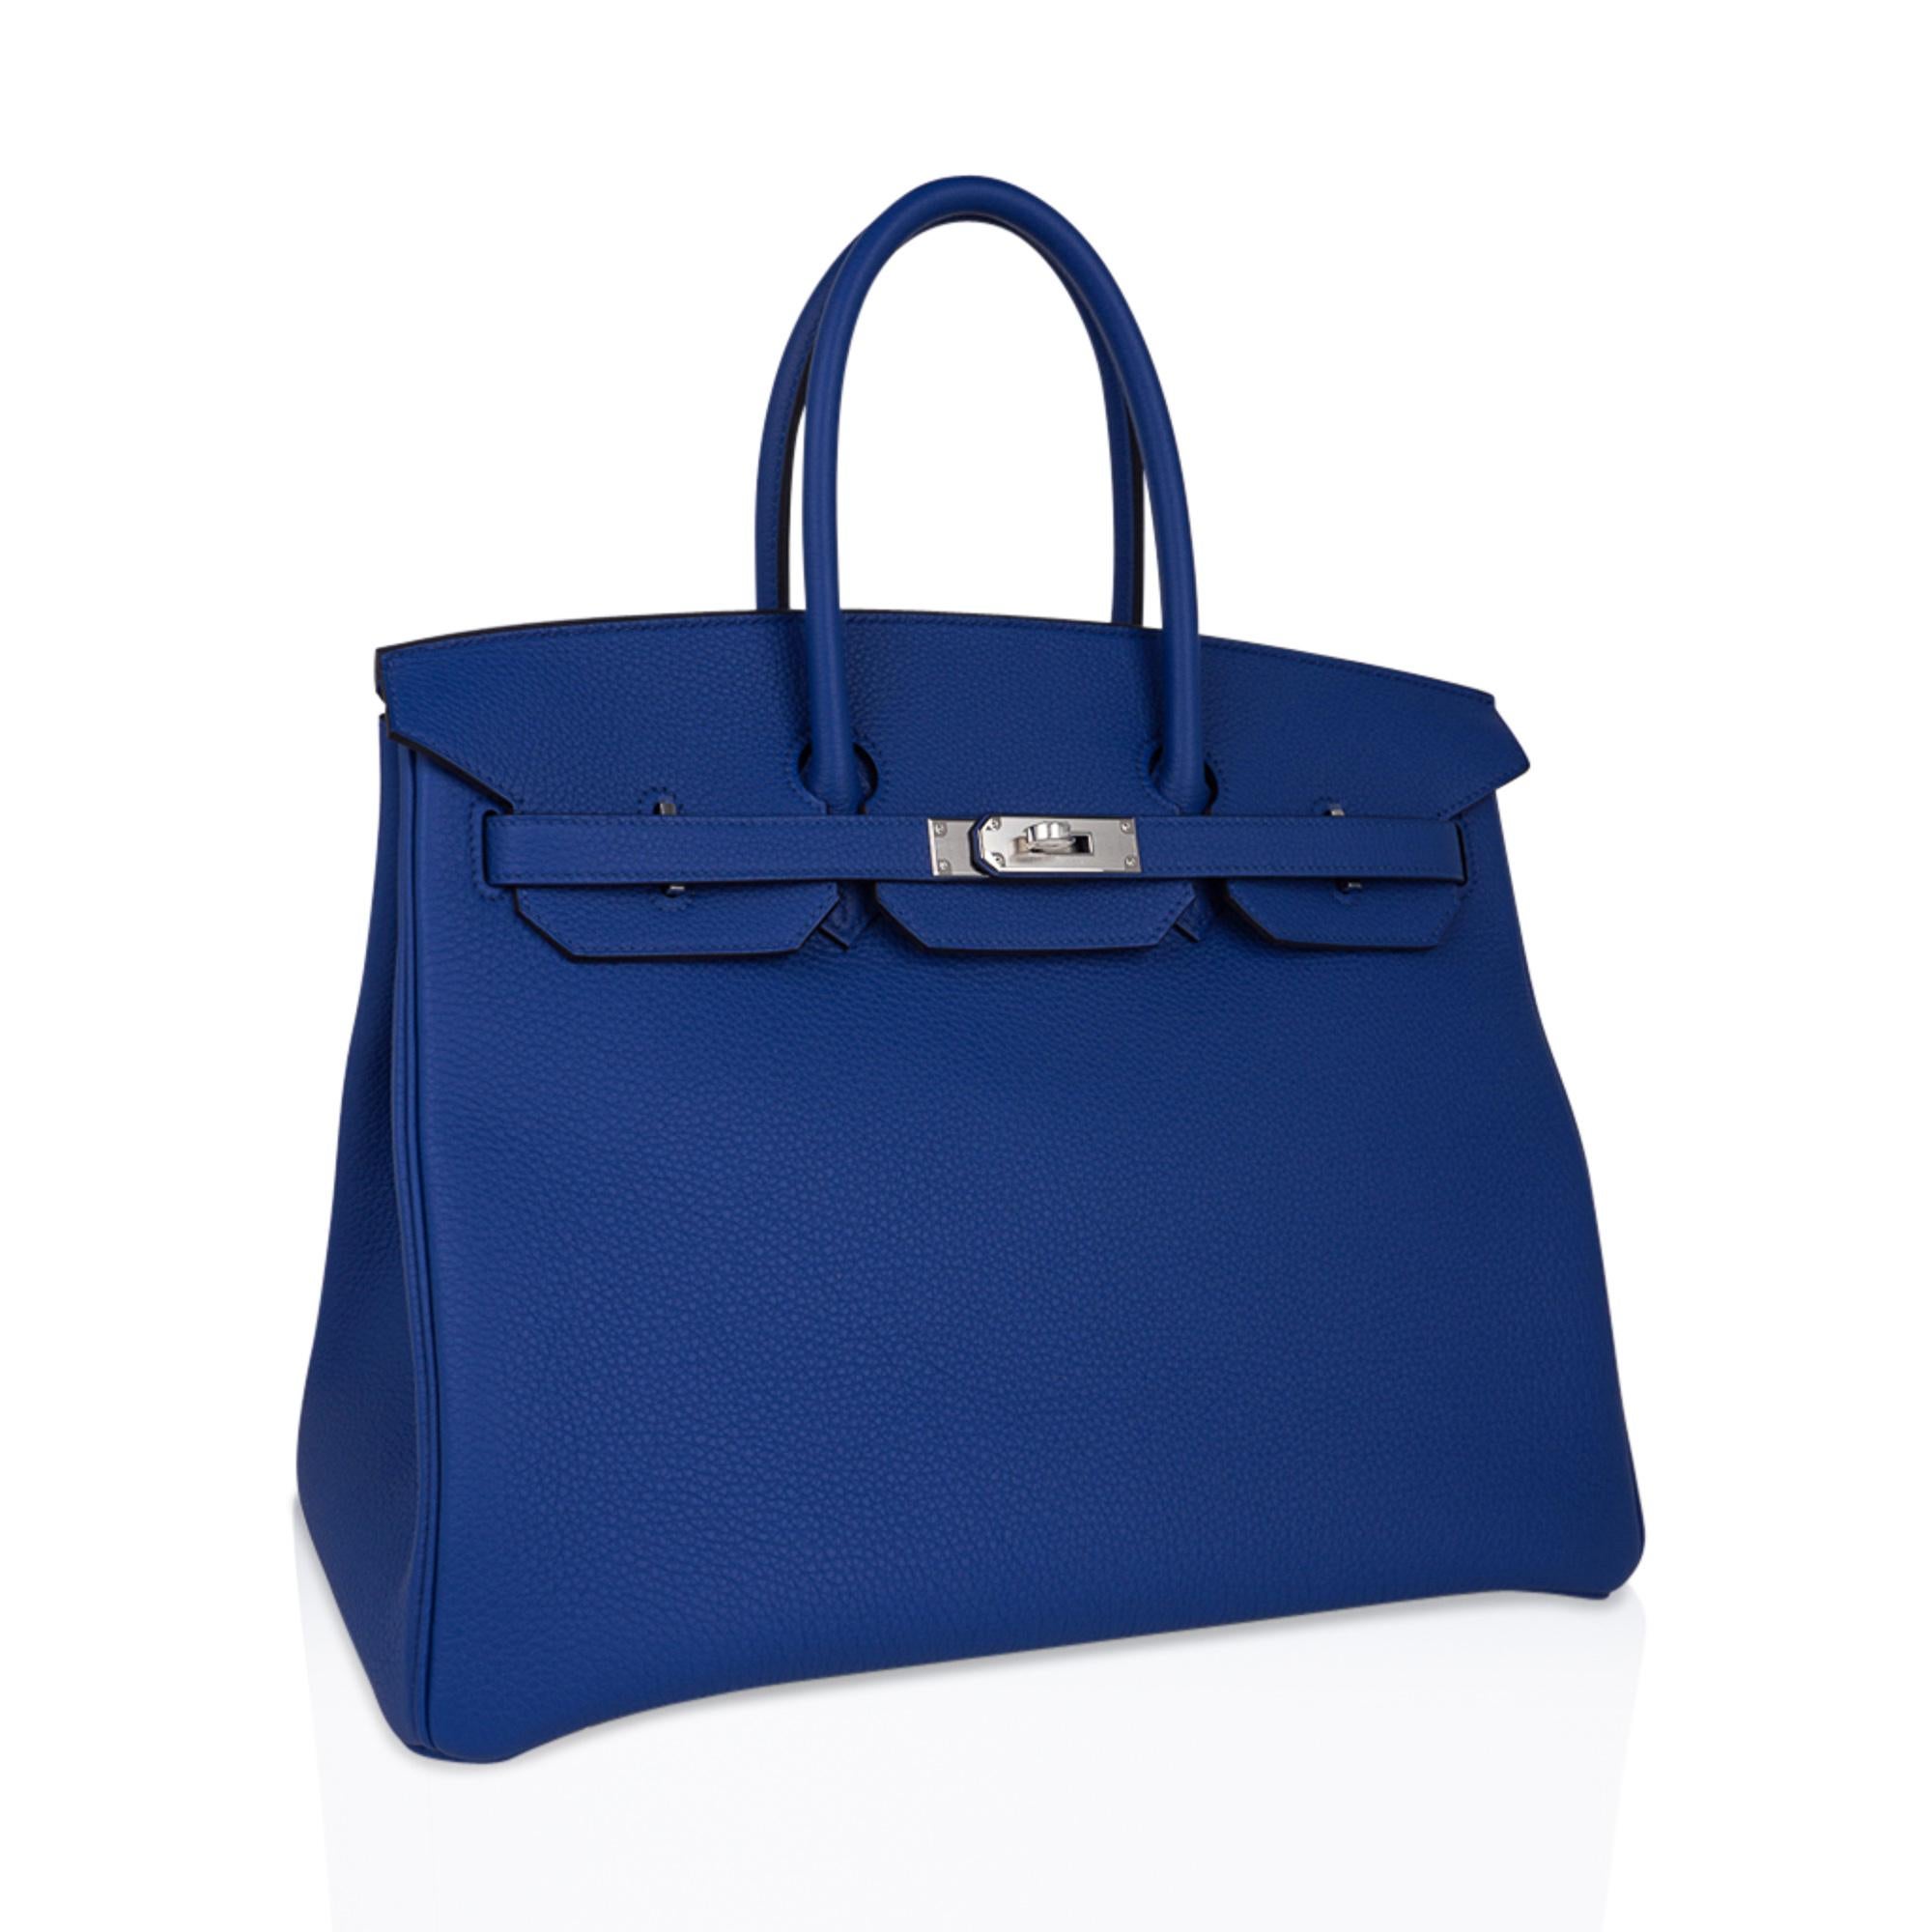 Mightychic bietet eine garantiert authentische Hermes Birkin 35 Tasche in leuchtendem Blau de  Frankreich.
Diese blaue Hermes Birkin Tasche ist atemberaubend in ihrer satten Farbe.
Togoleder ist strukturiert und sehr kratzfest.
Frisch mit